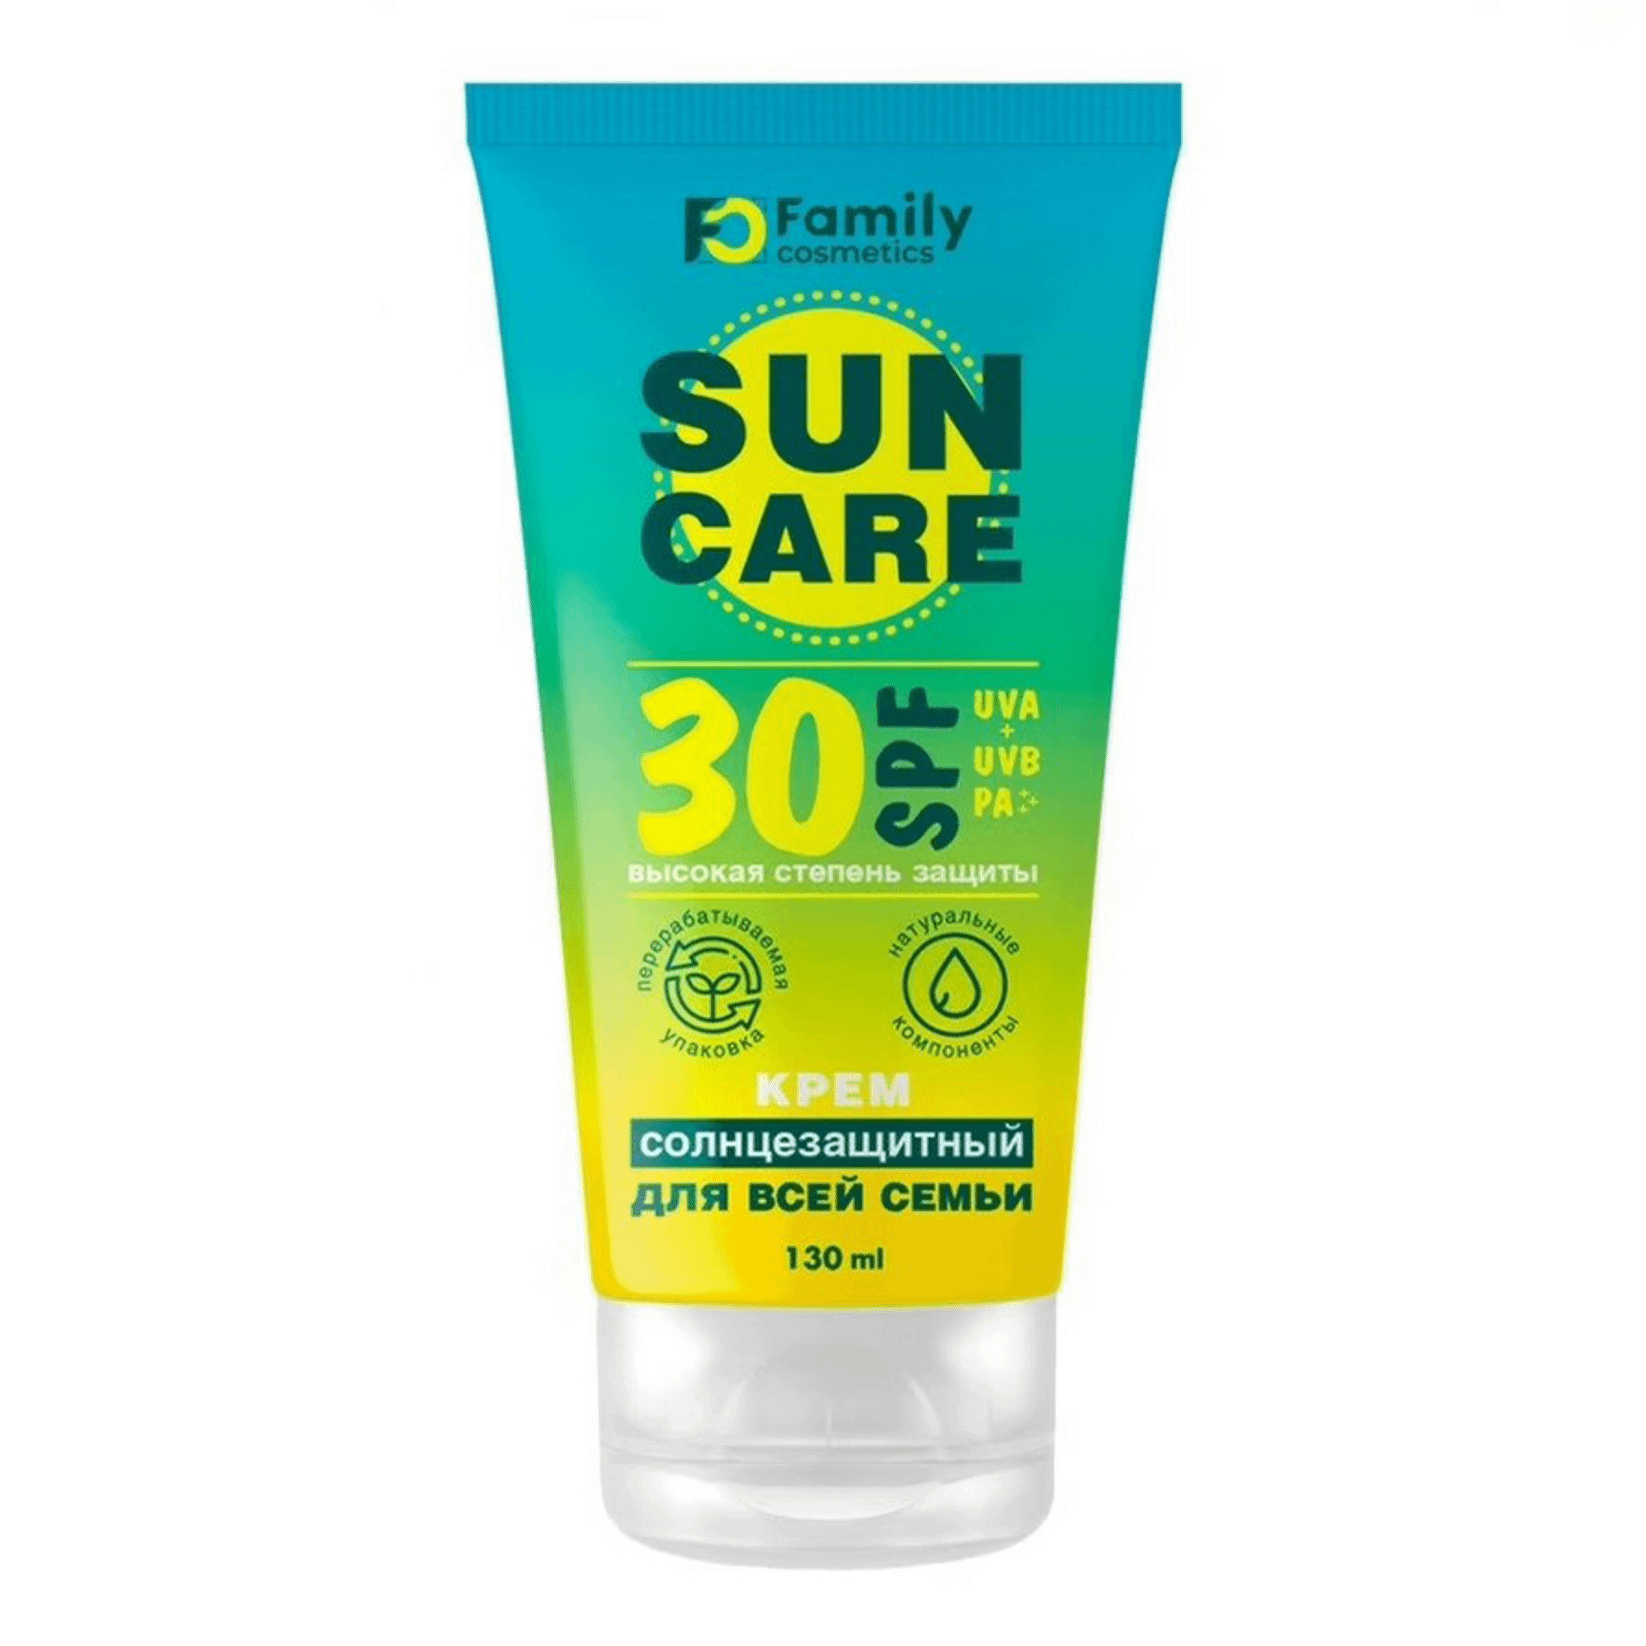 Купить Солнцезащитный крем Family Cosmetics Sun Care для лица и тела SPF 30 130 мл